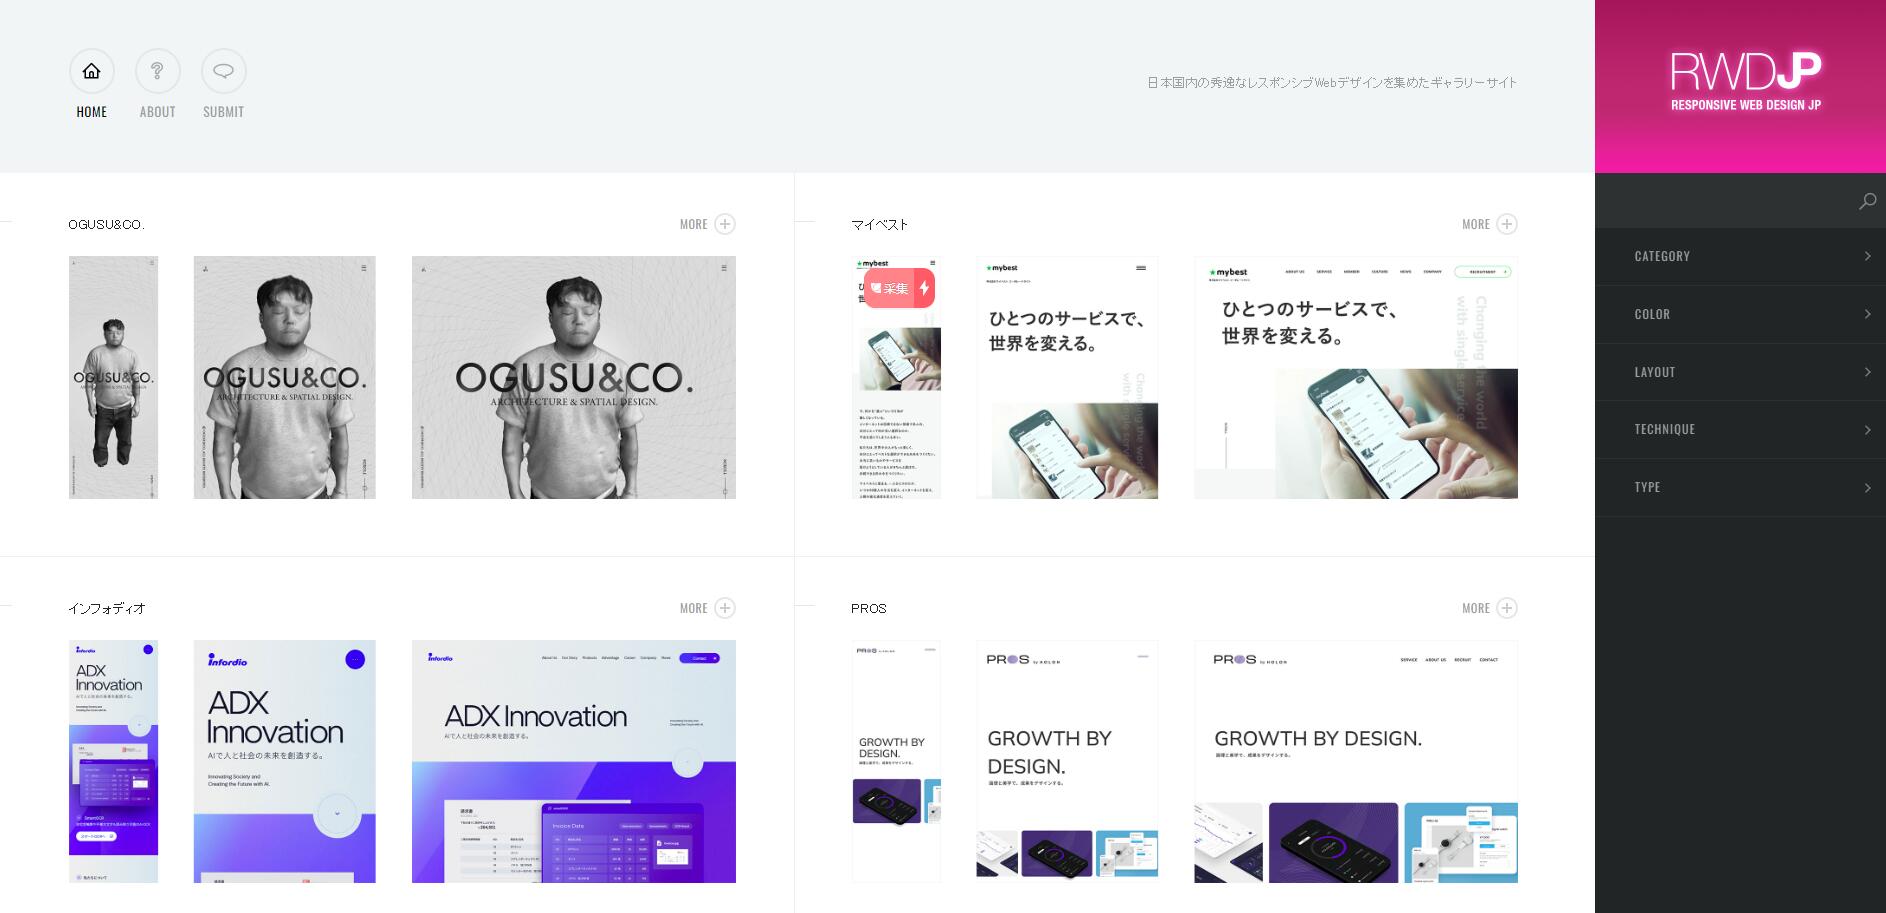 RWD JP是一个专门收集有RWD（响应式网页设计）的日本网站收集页。